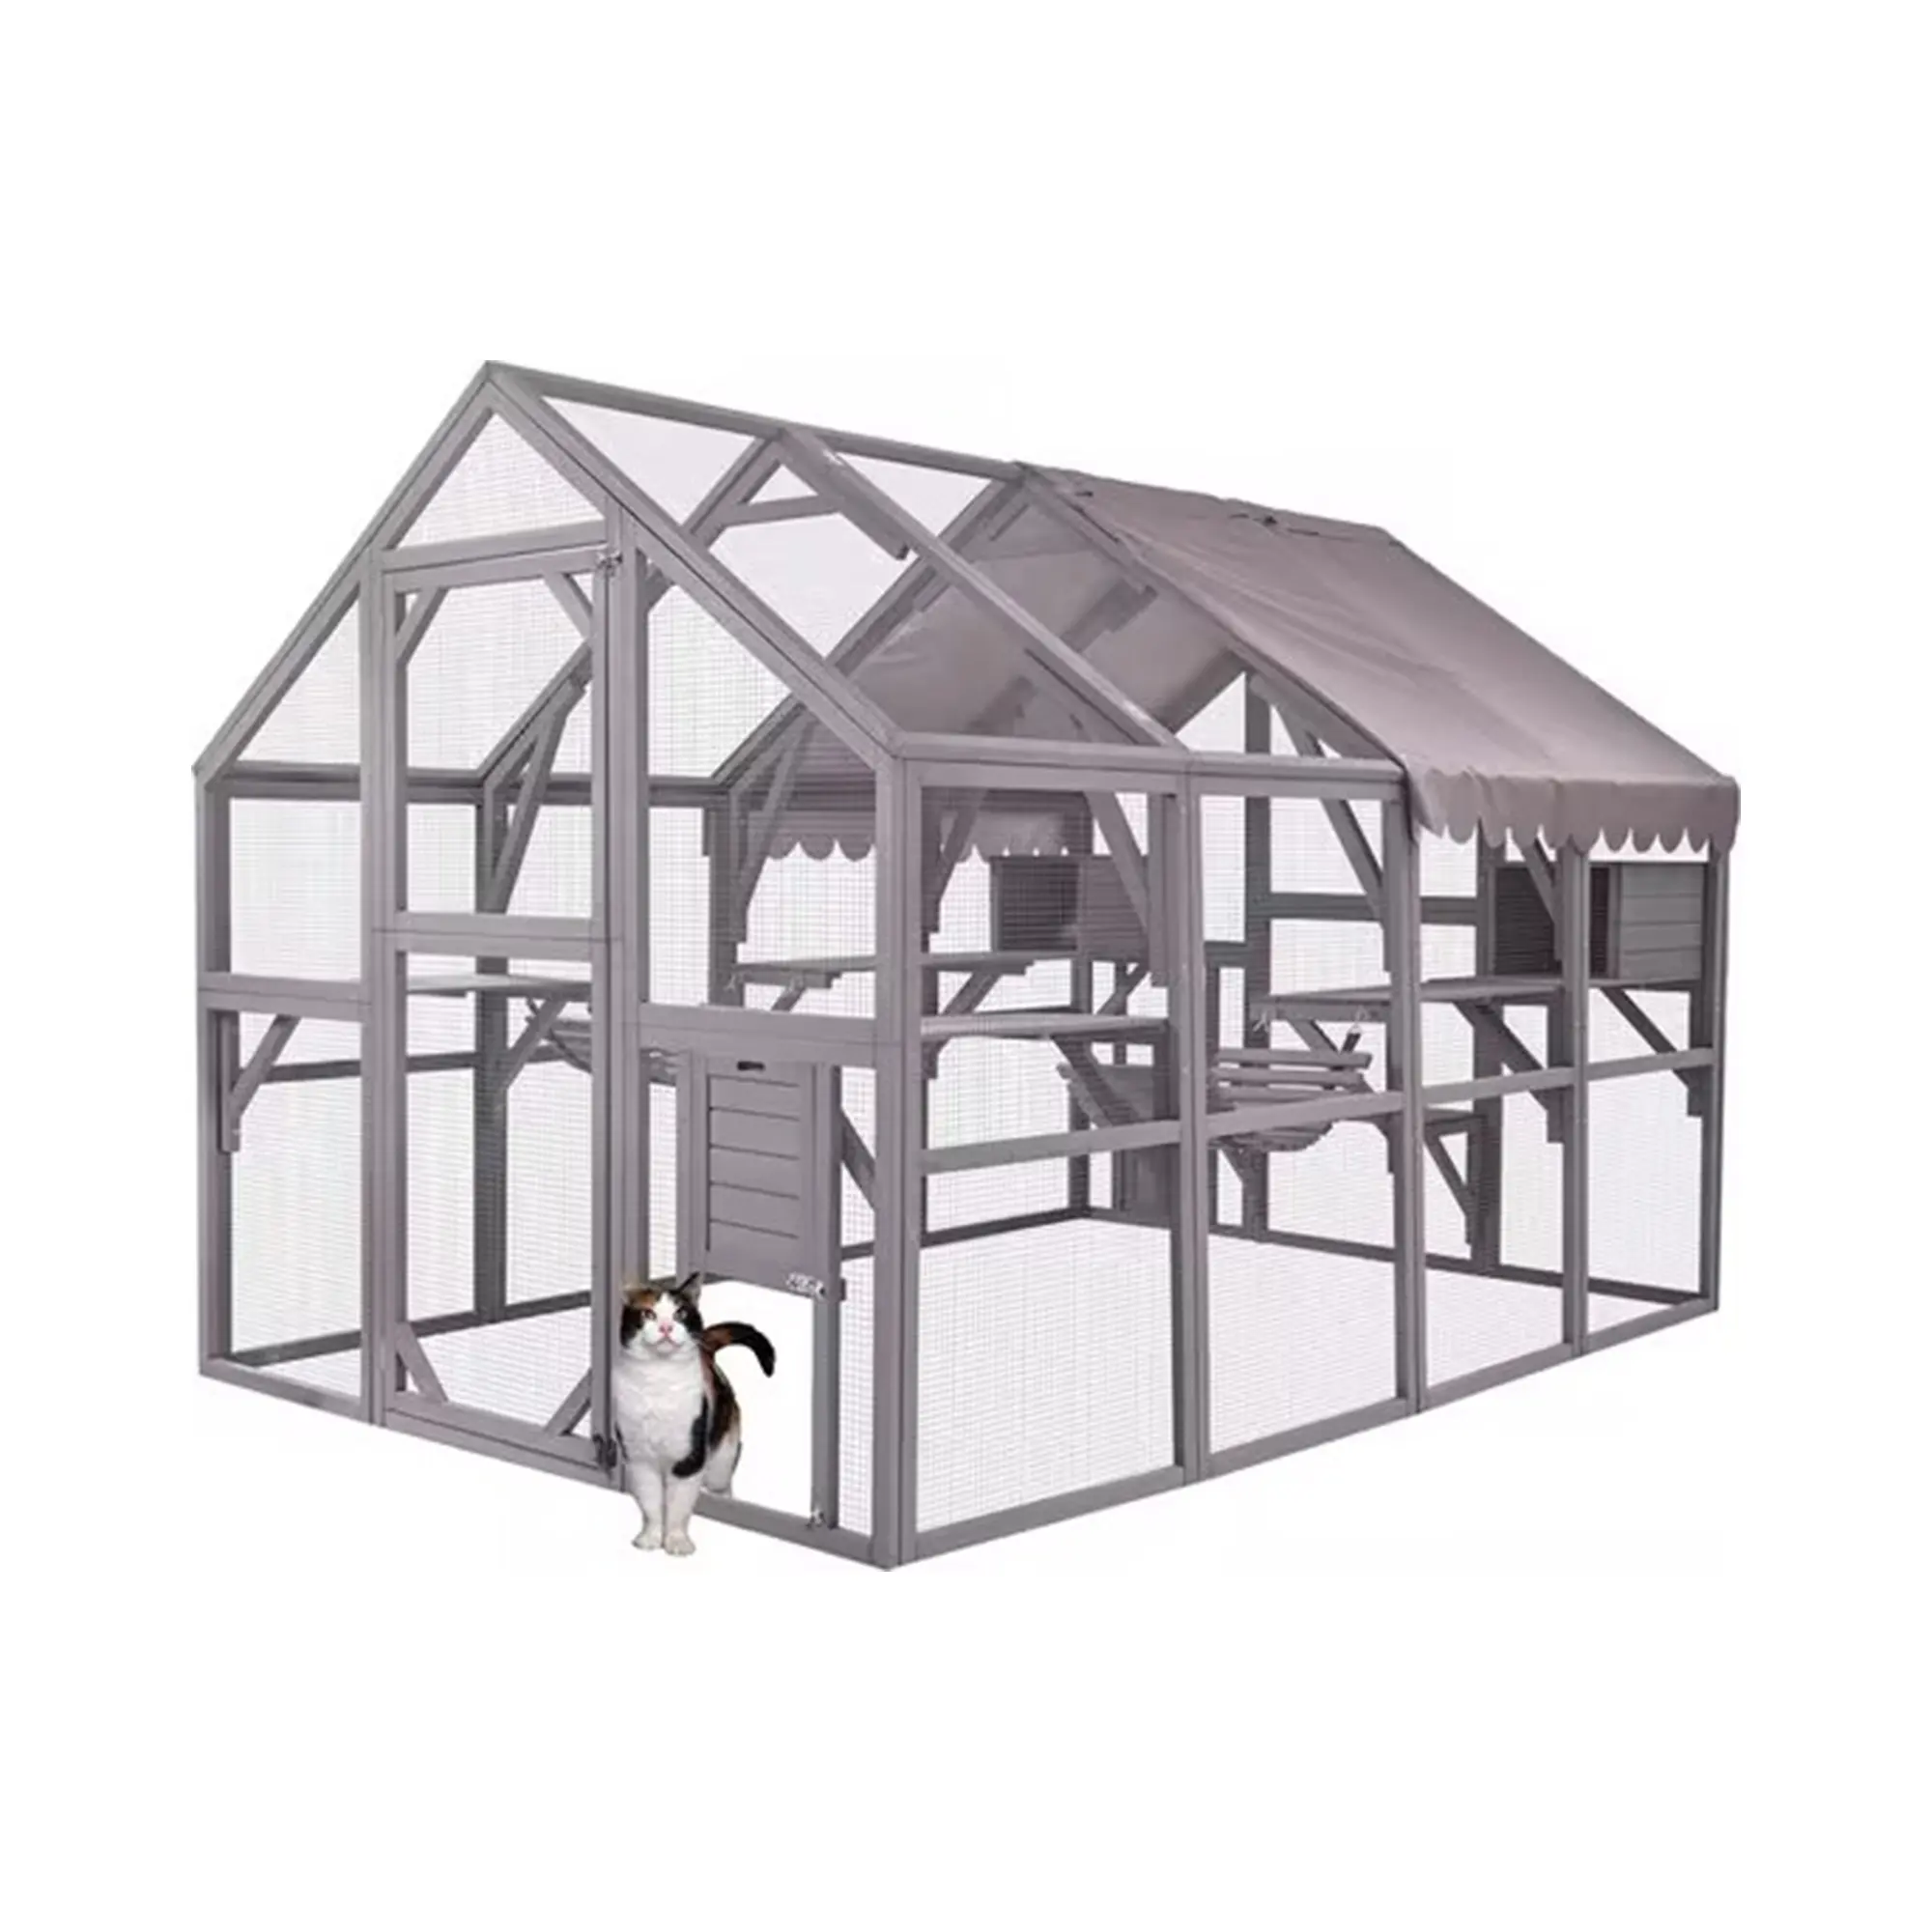 XPT070 in legno per animali domestici gabbie per gatti grigiastro colore per fattoria all'aperto indoor di grandi dimensioni